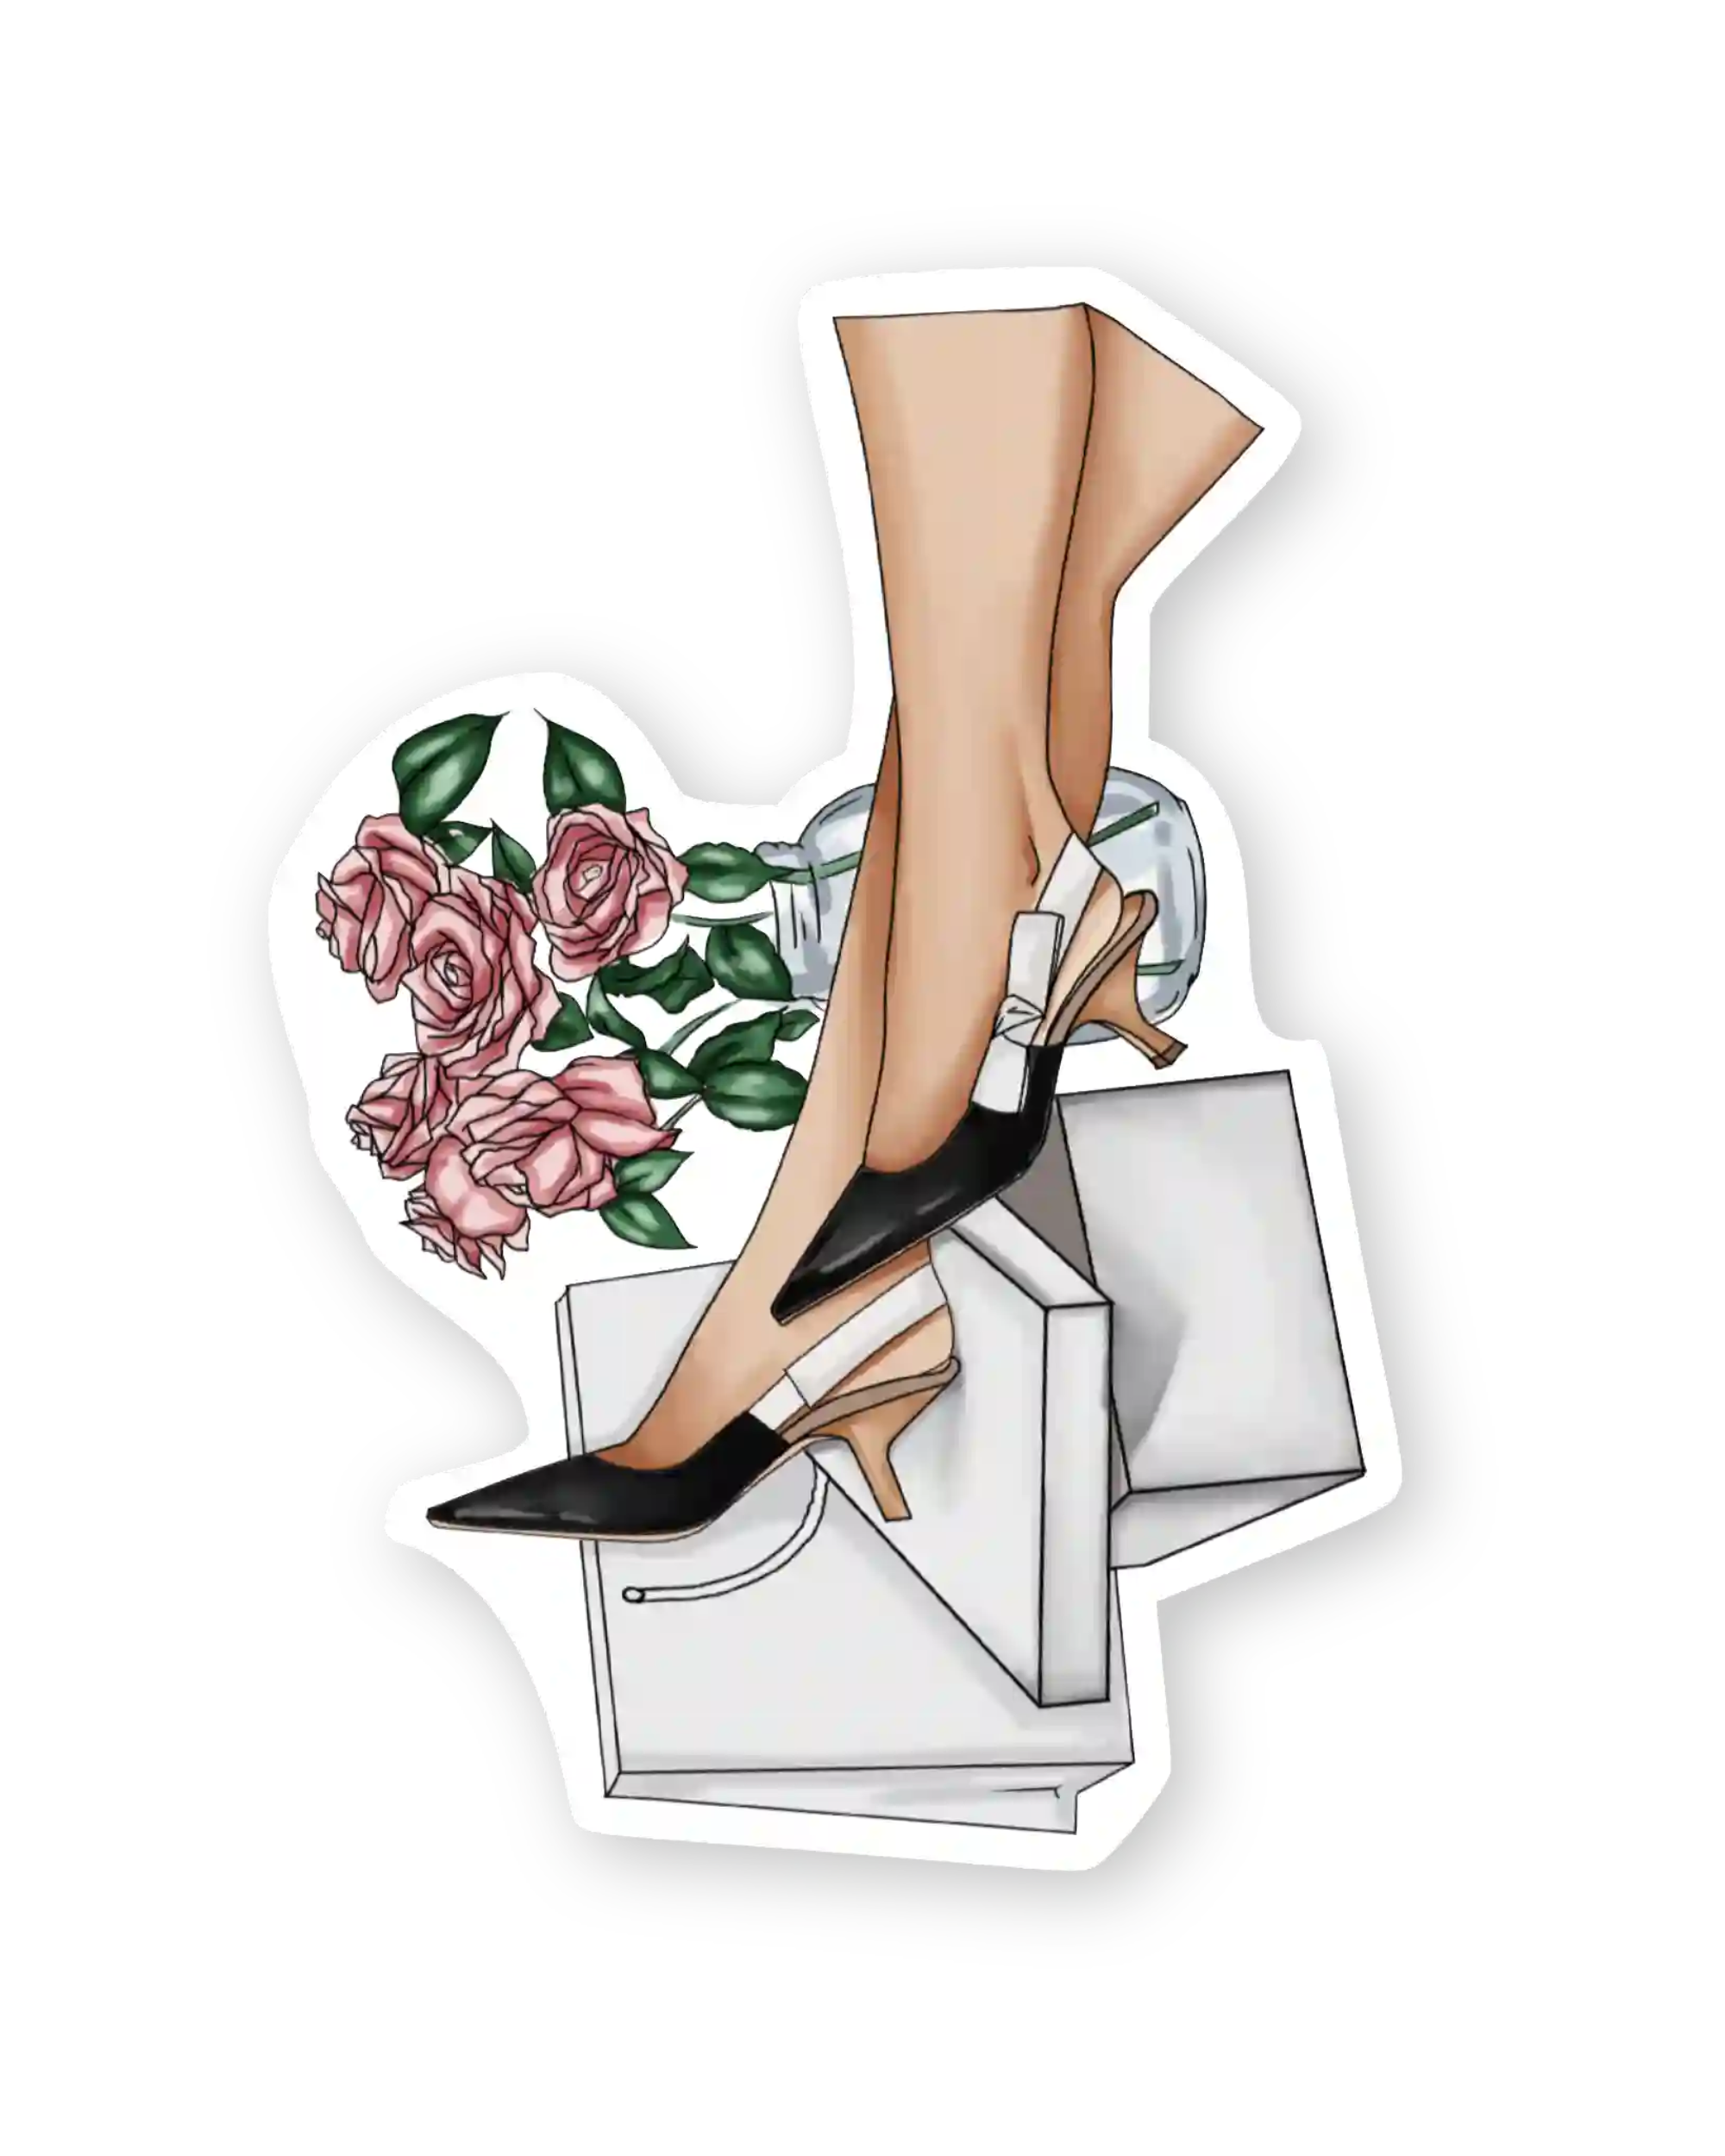 Naljepnice za planer La Parissiene ilustracije detalj ženske noge u sandalama i buket cvijeća